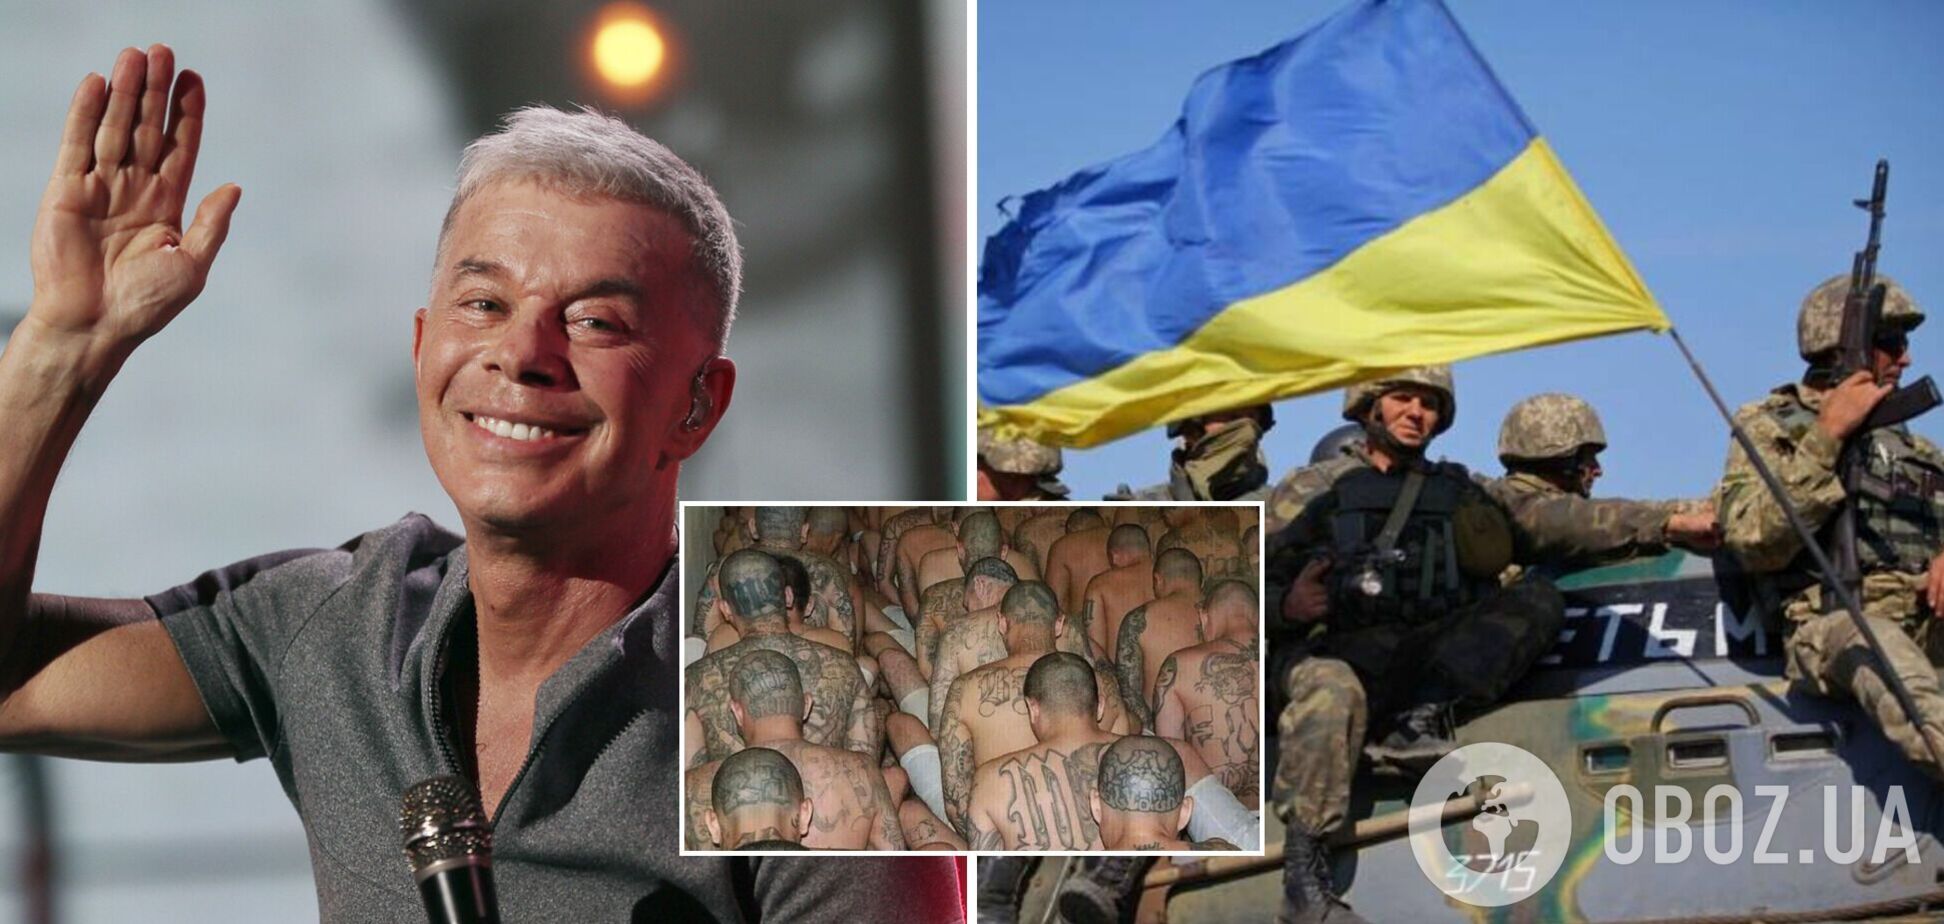 Олег Газманов хотел подставить украинских военных, но опозорился фото банды из Сальвадора